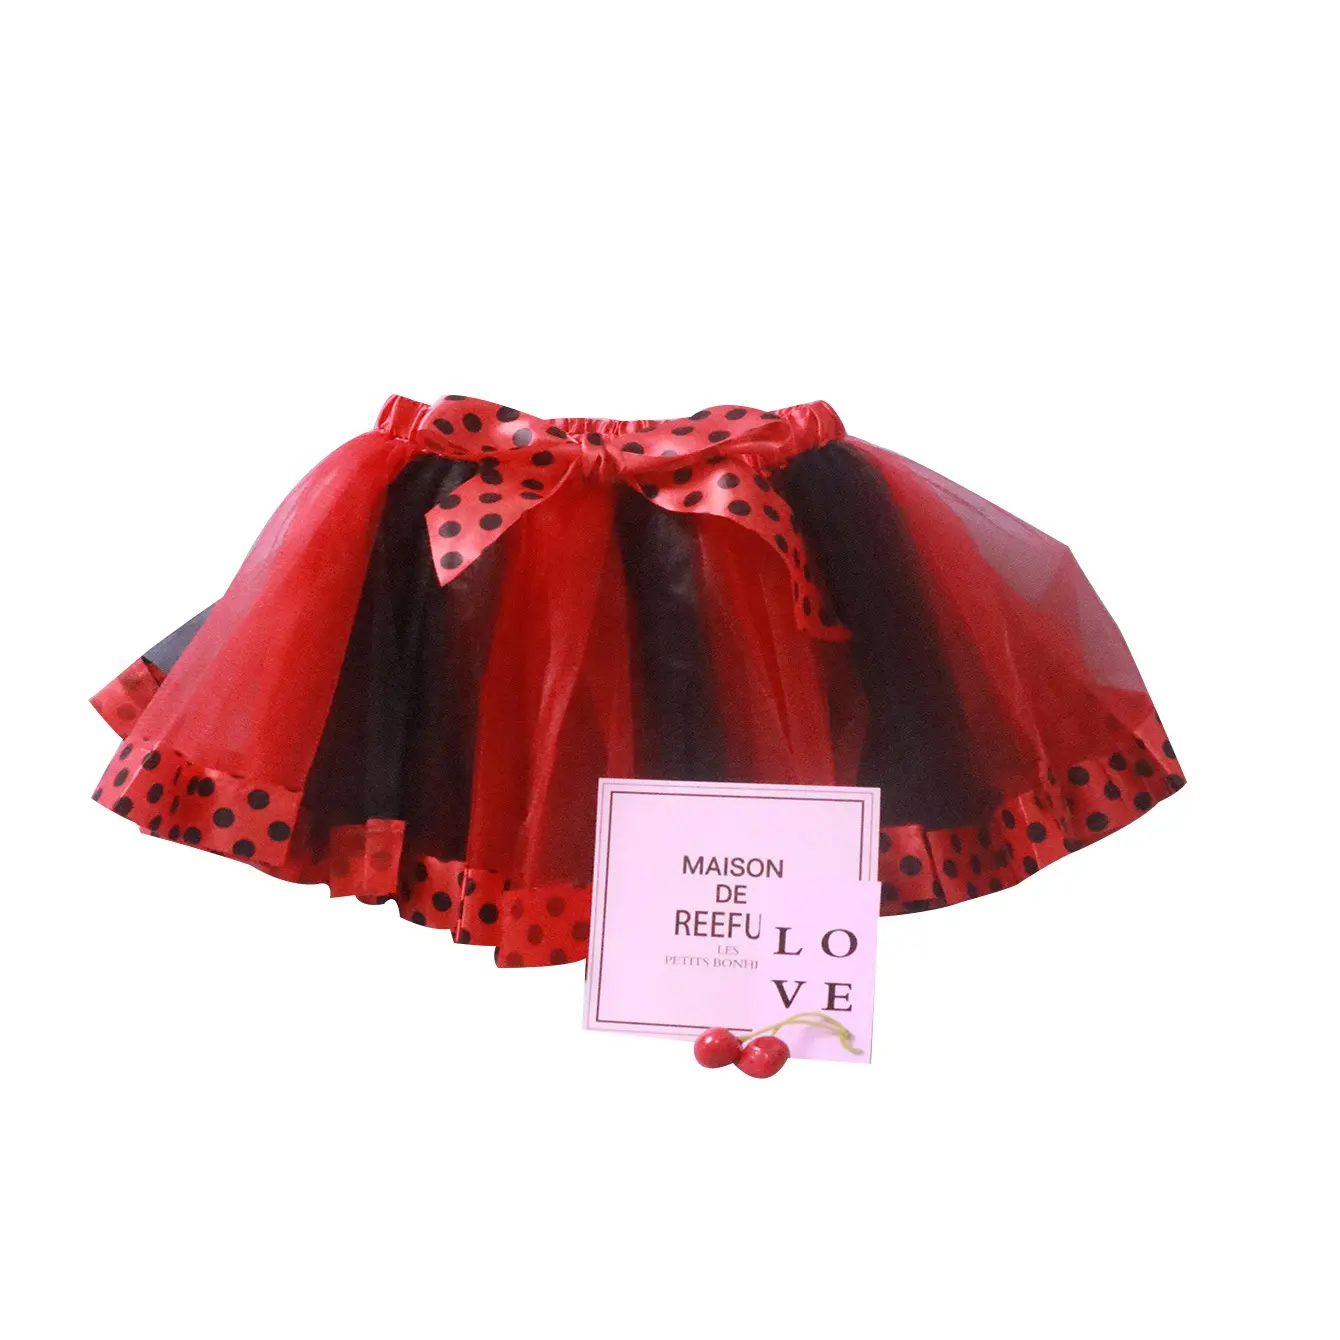 Недорогие юбки-пачки в горошек с атласной отделкой для молодых девушек, красные и черные юбки для одежды